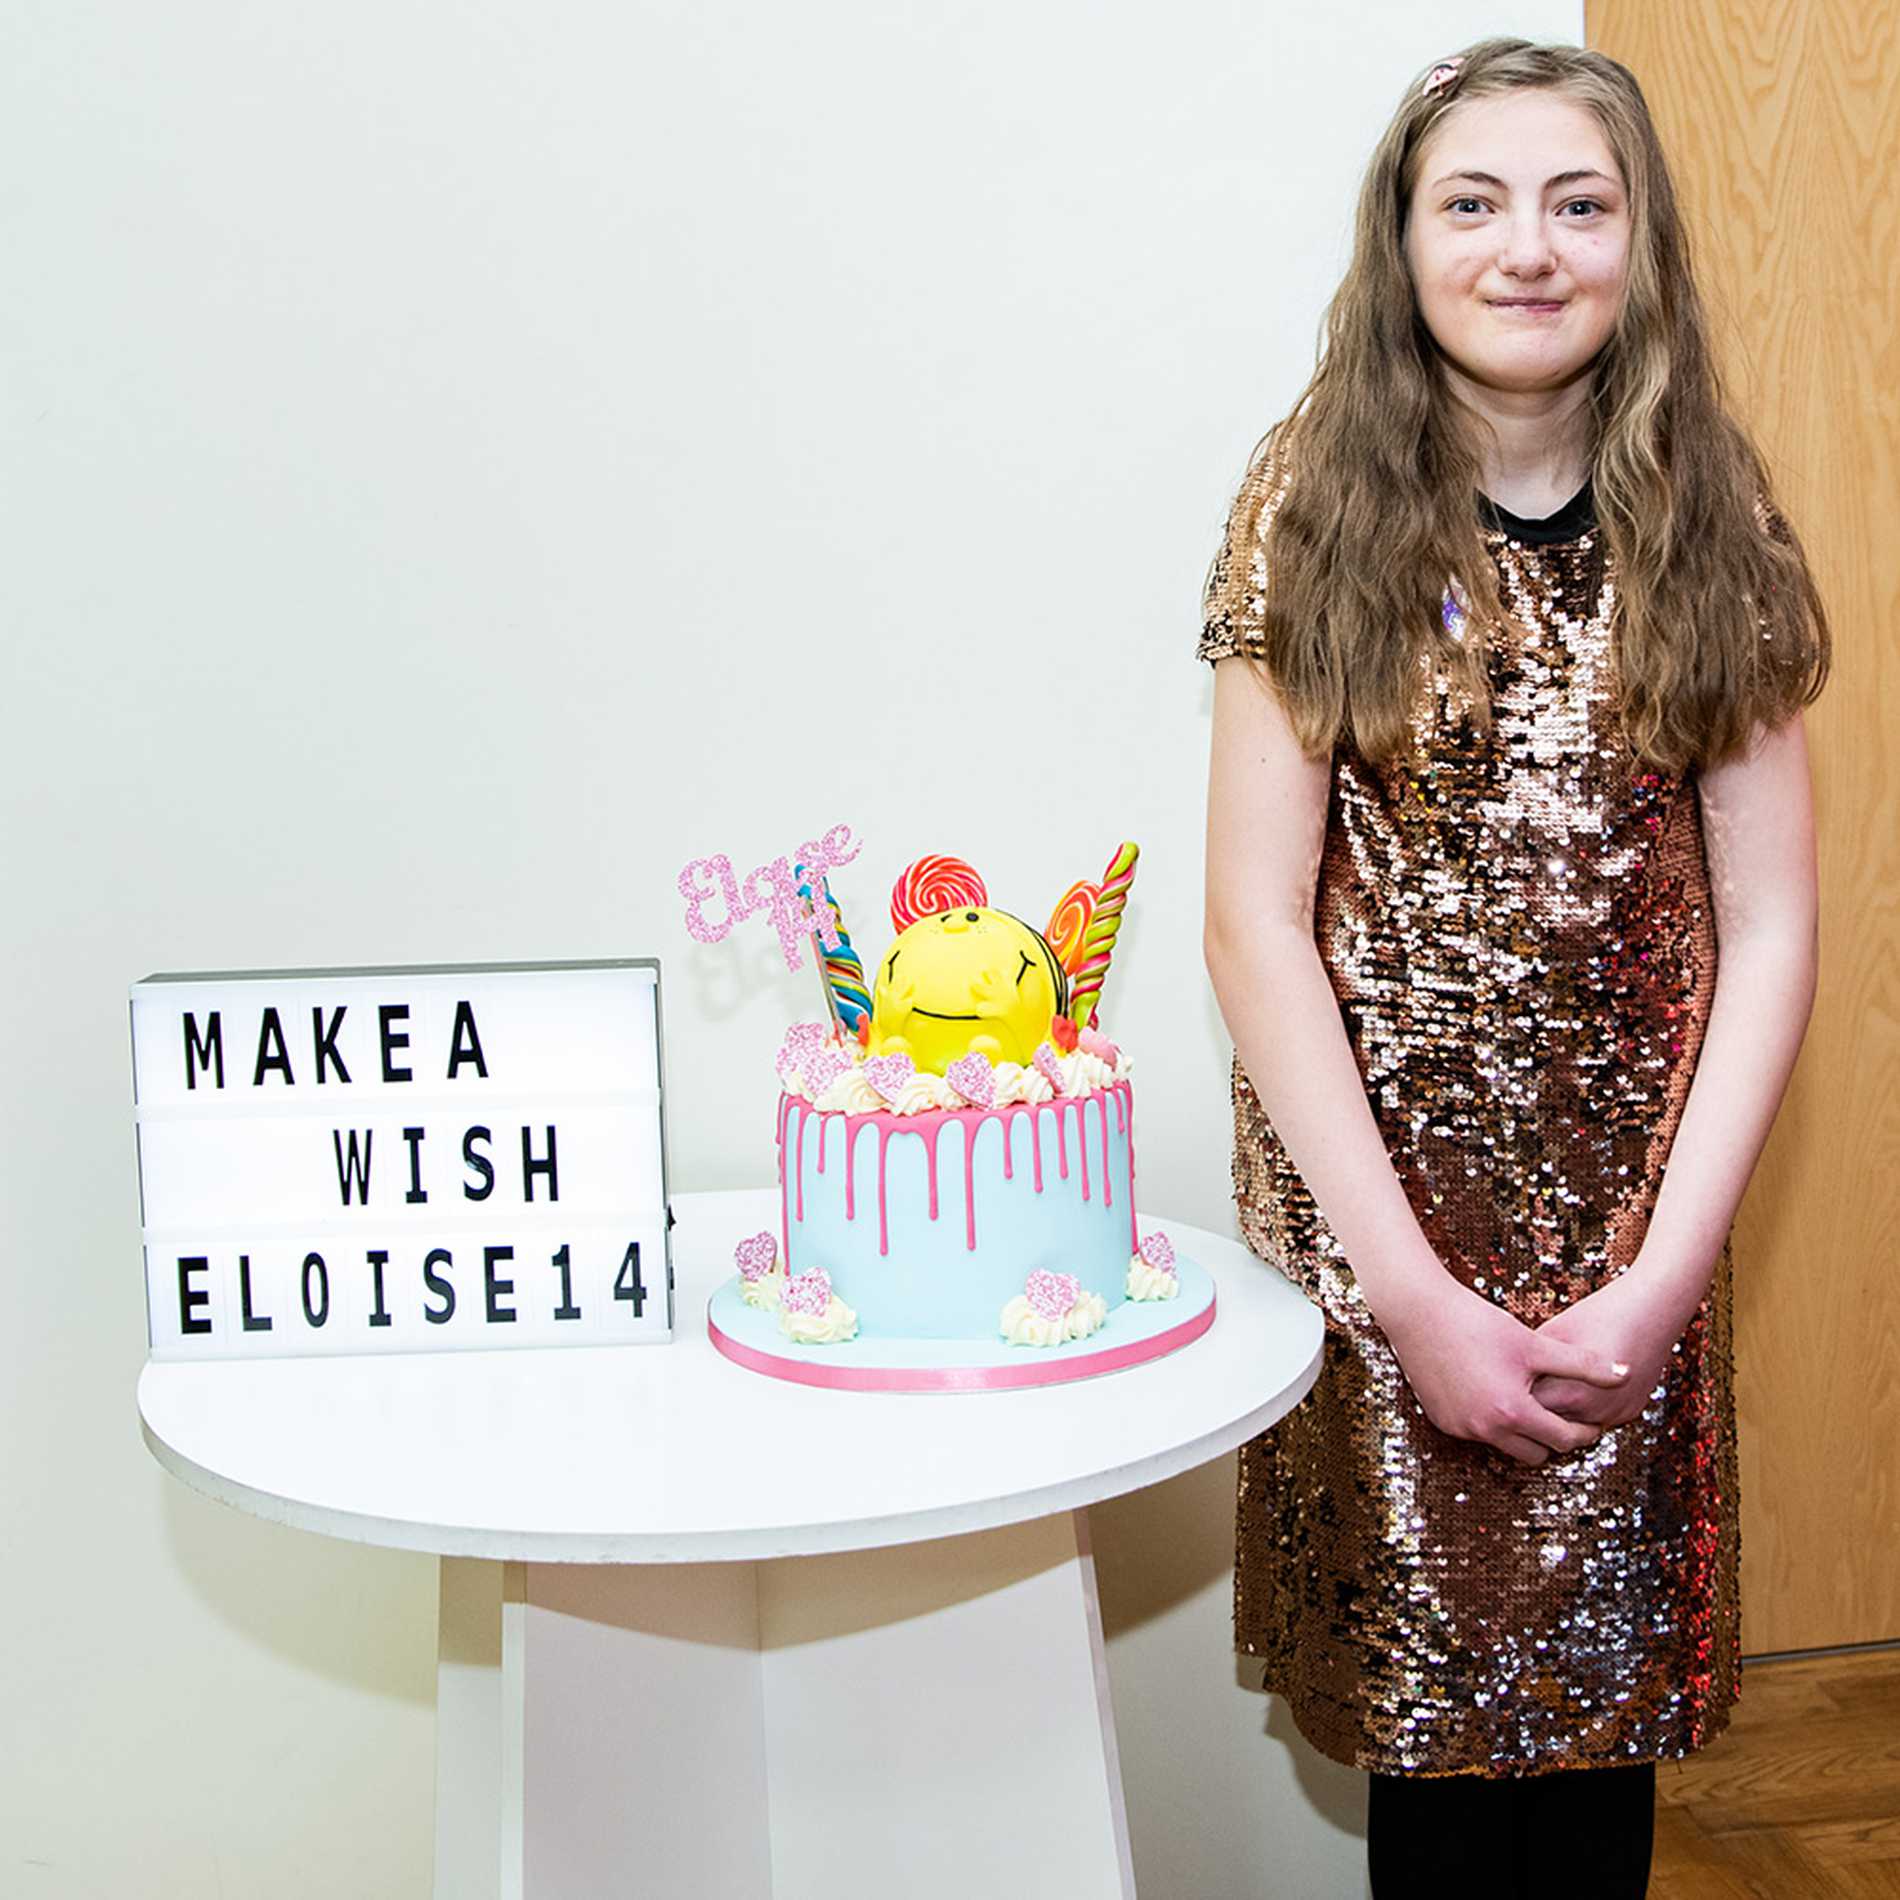 Eloise standing by her Mr Men-themed birthday cake.